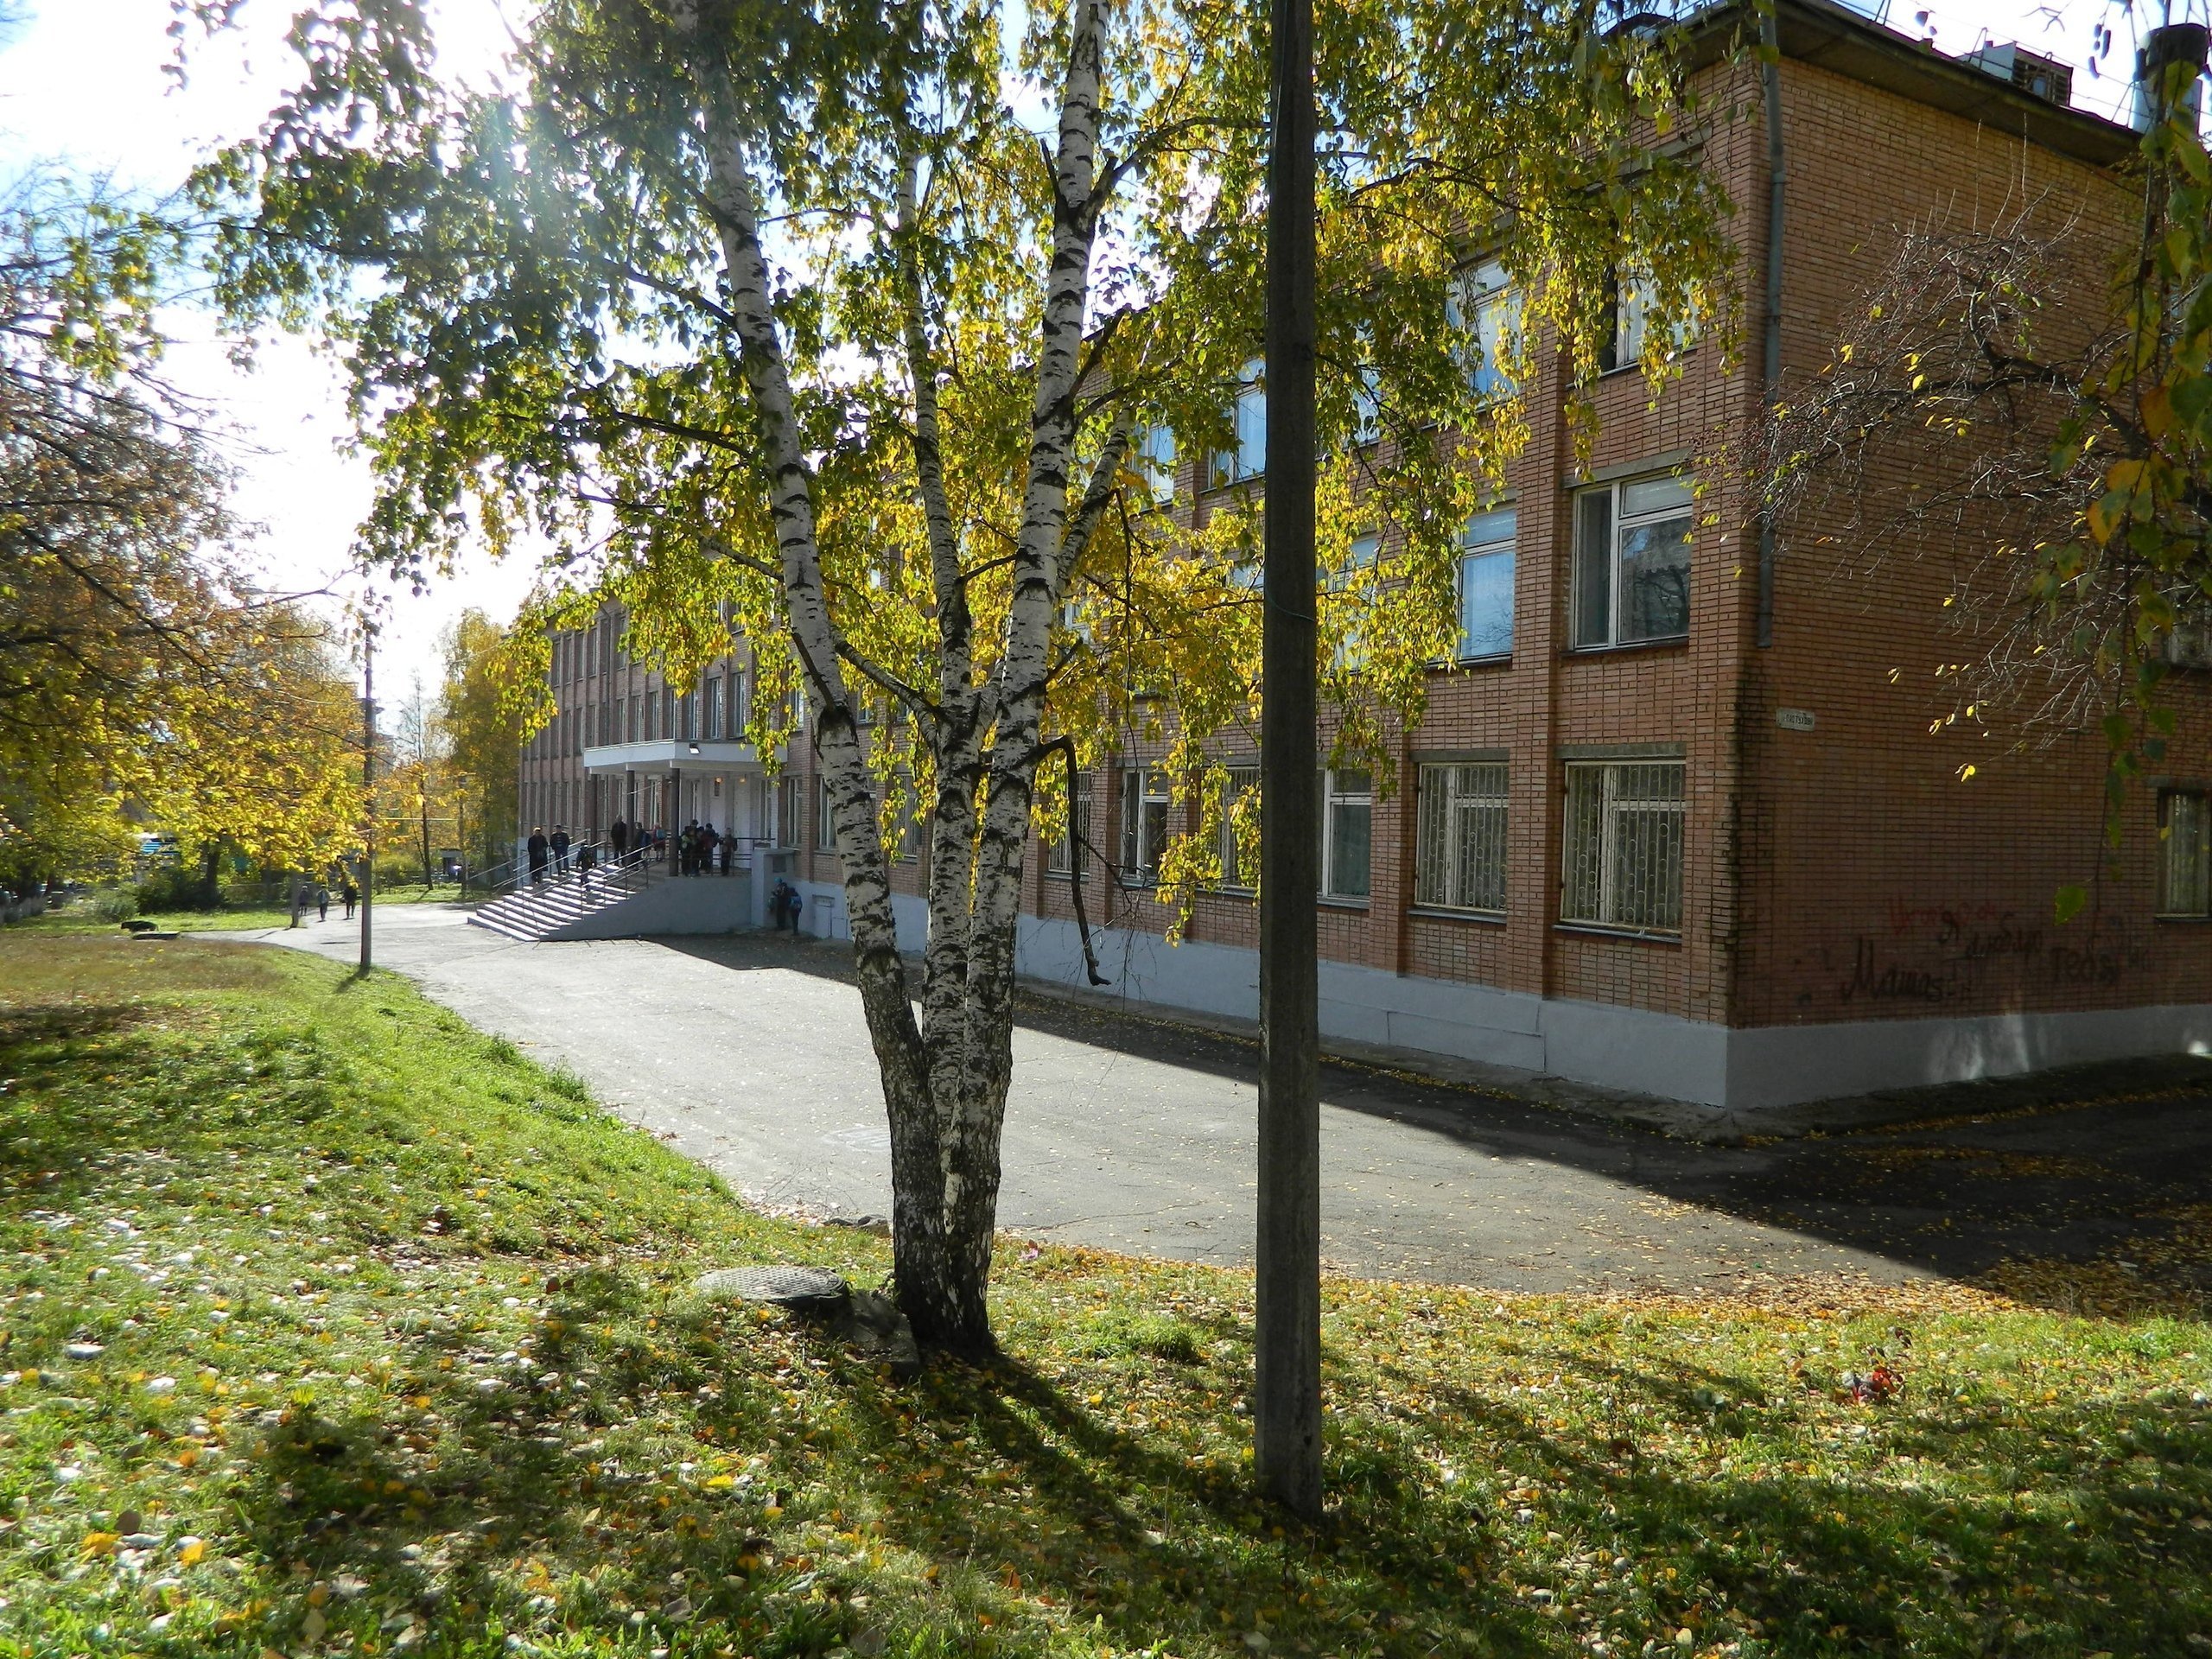 Объединенный пешеходный переход и светофор с кнопкой появятся у школы №68 в Ижевске